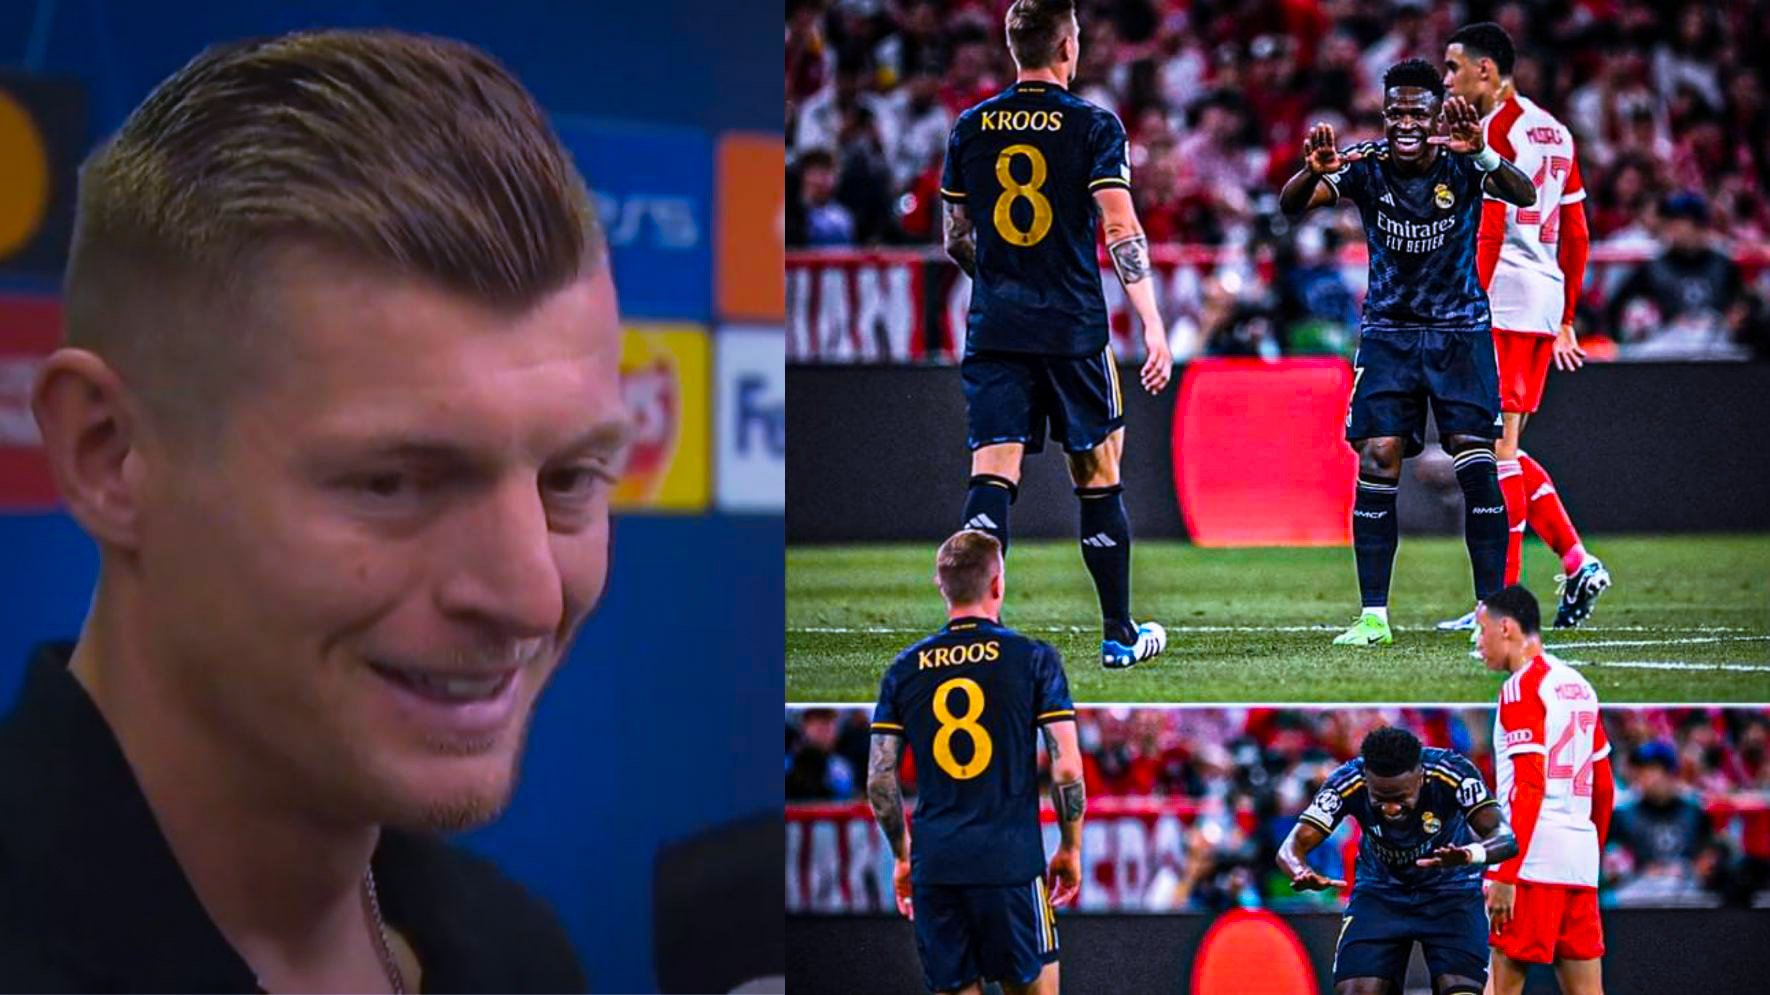  Bayern – Real : L’étrange réaction de Kroos après sa sublime passe à Vinicius mérite le respect